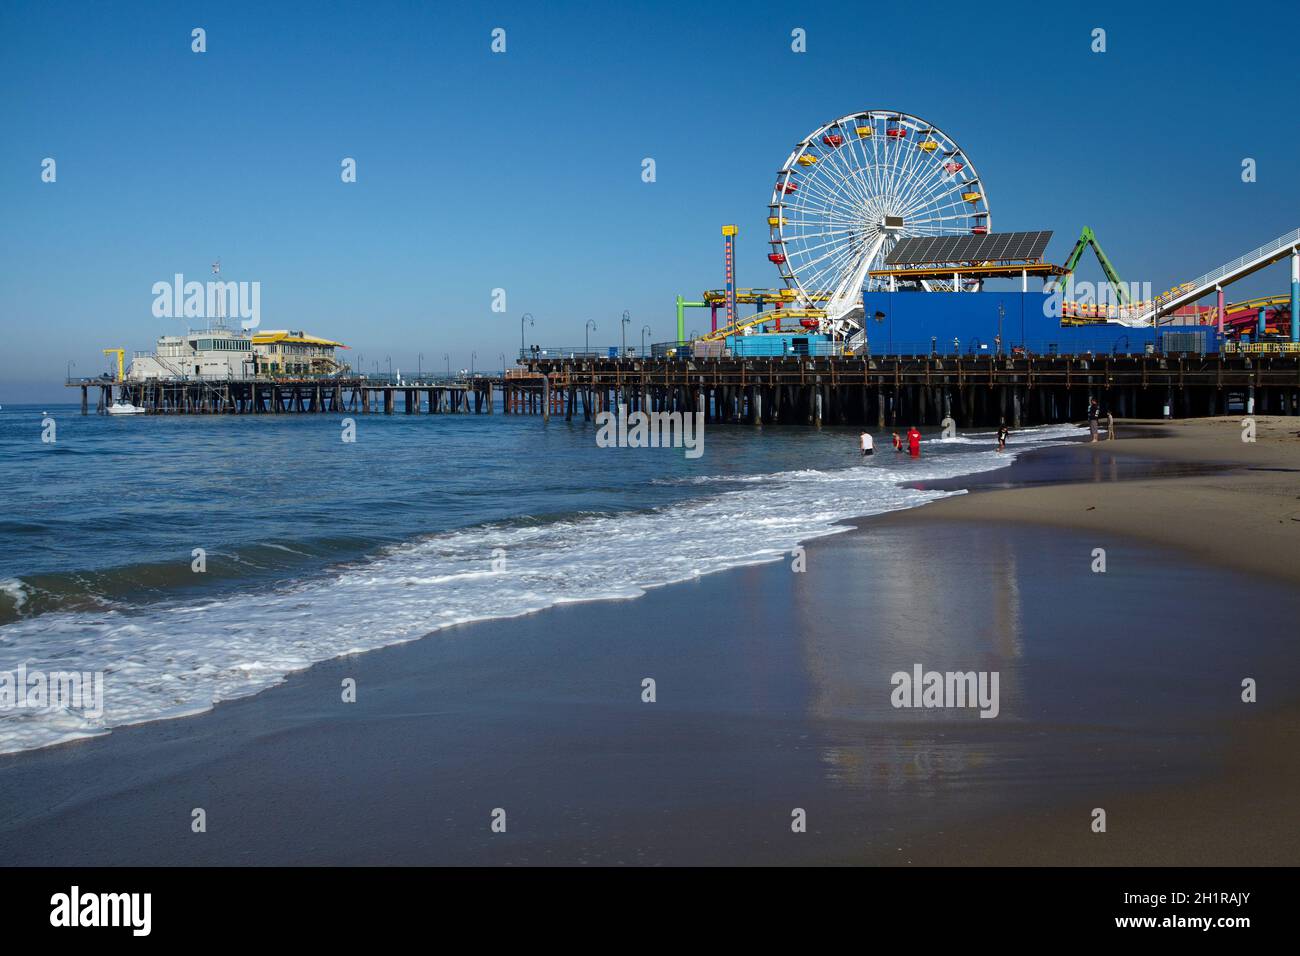 Plage et grande roue à Pacific Park, Santa Monica Pier, Santa Monica, Los Angeles, Californie,ÉTATS-UNIS Banque D'Images